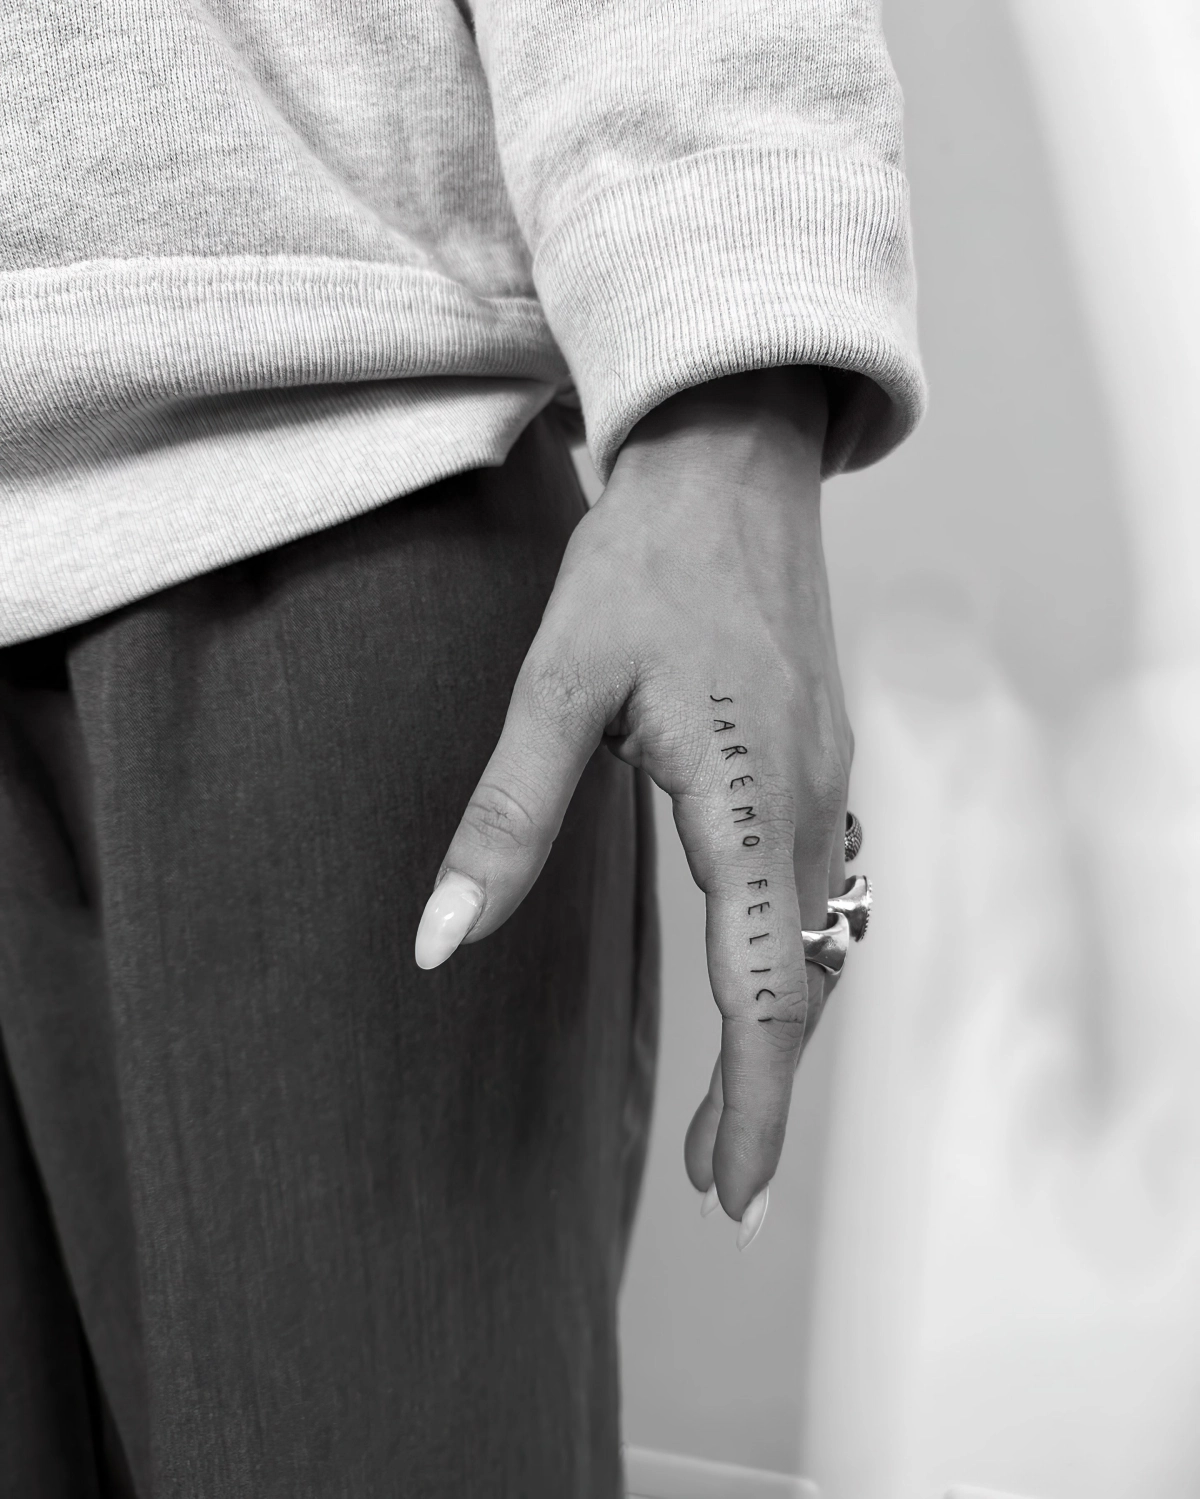 tatouage lettrage femme photo noir et blanc art corporel doigts ongles longs